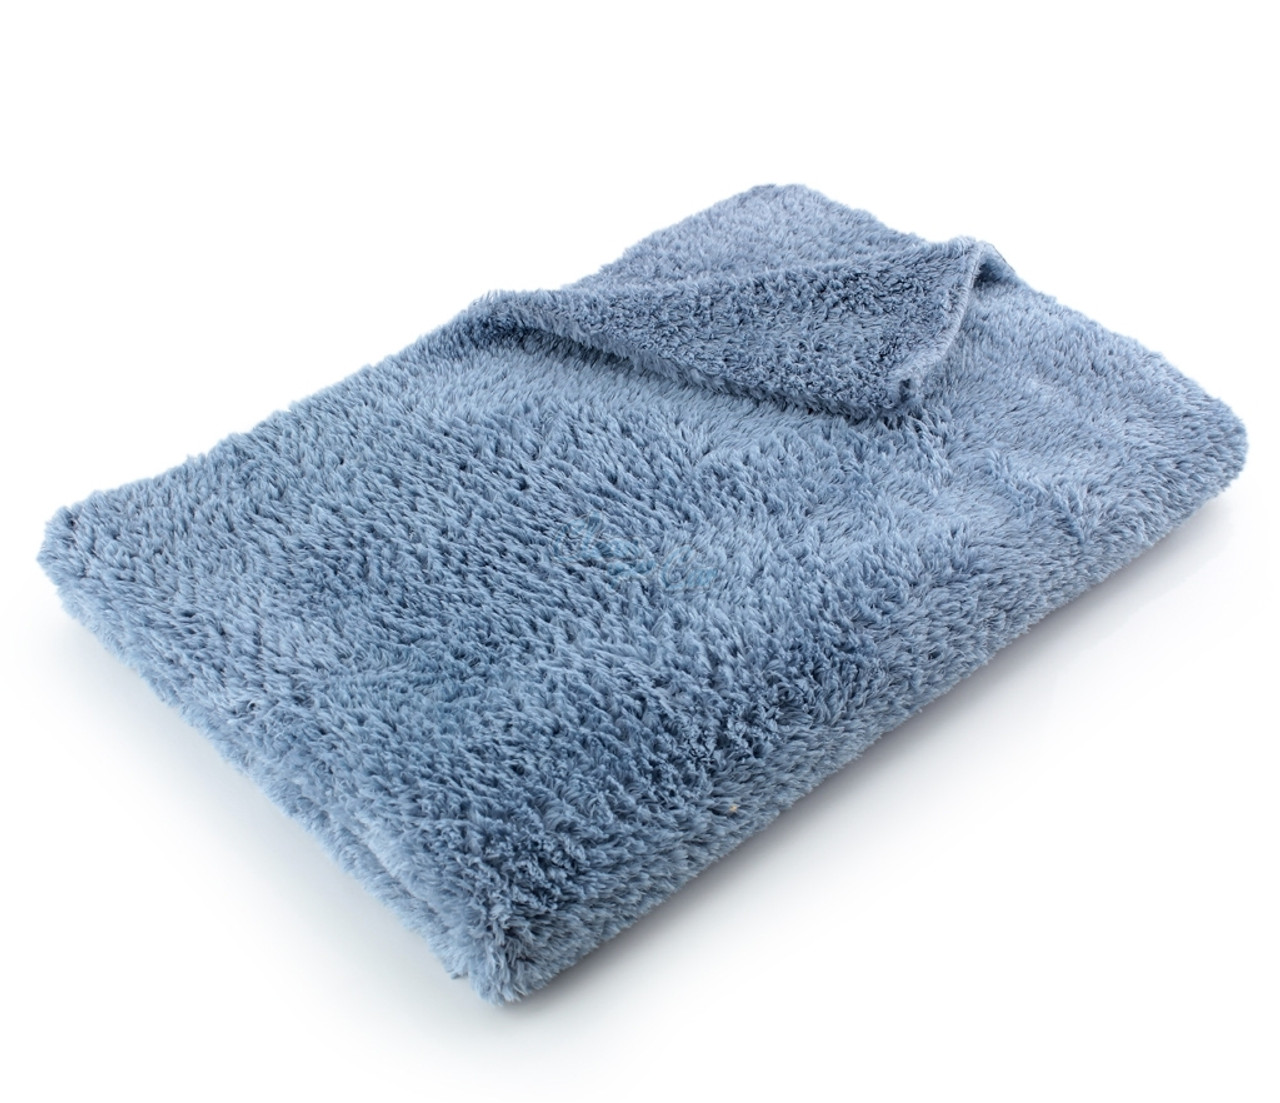 Microfiber Towels : Target